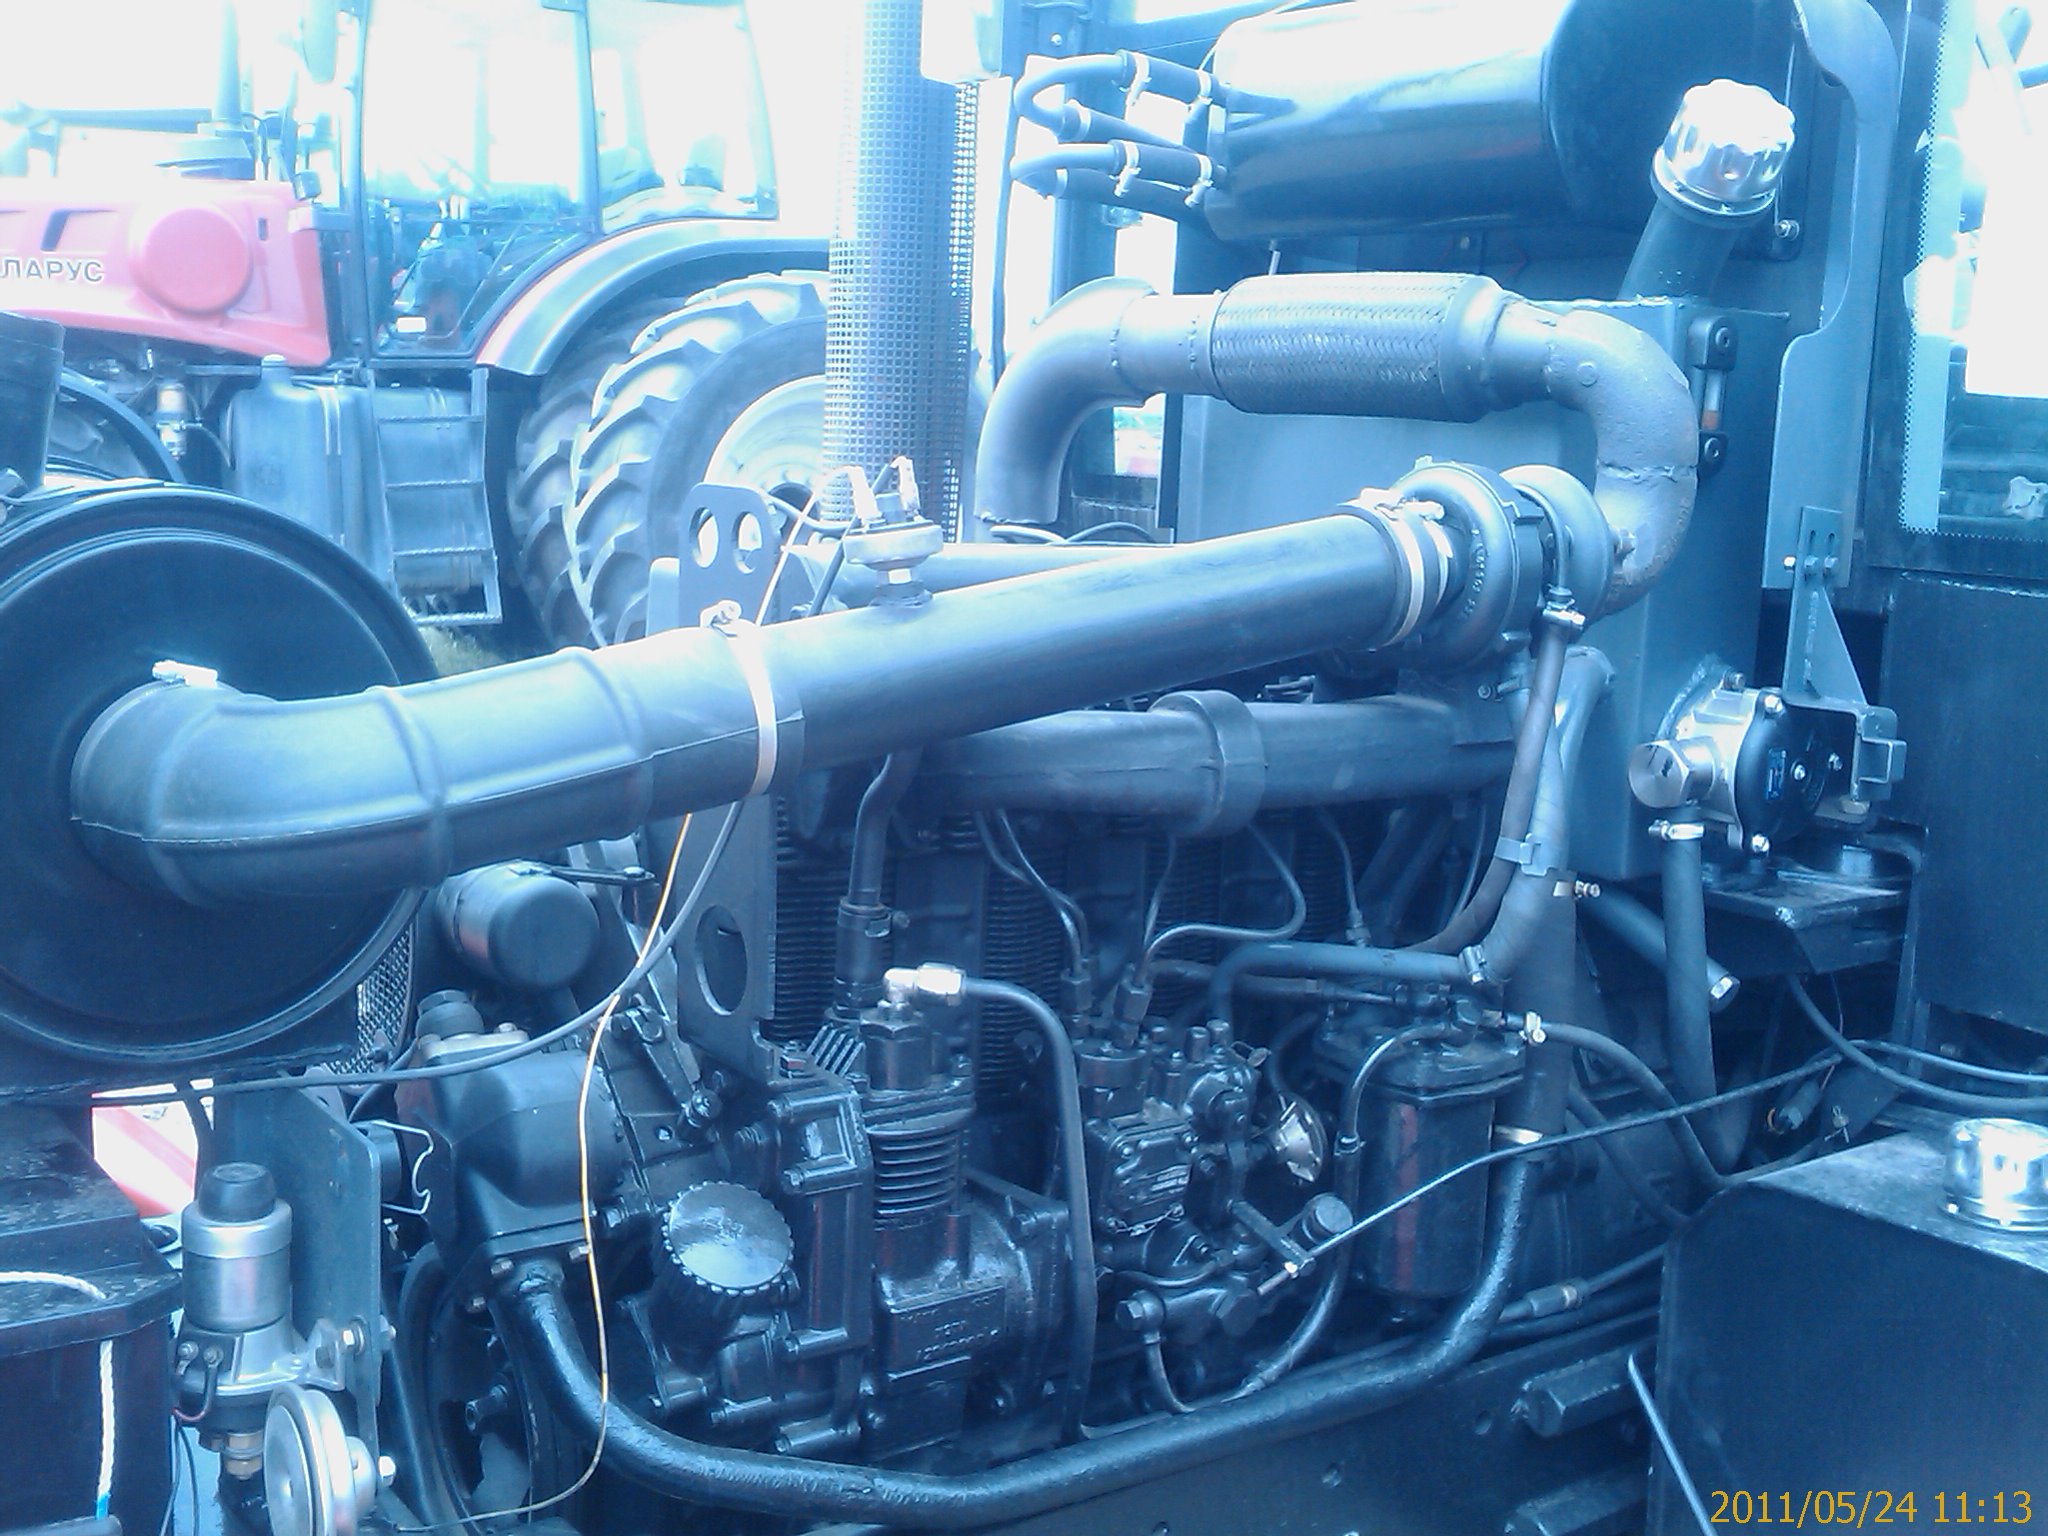 ремонт дизельного двигателя